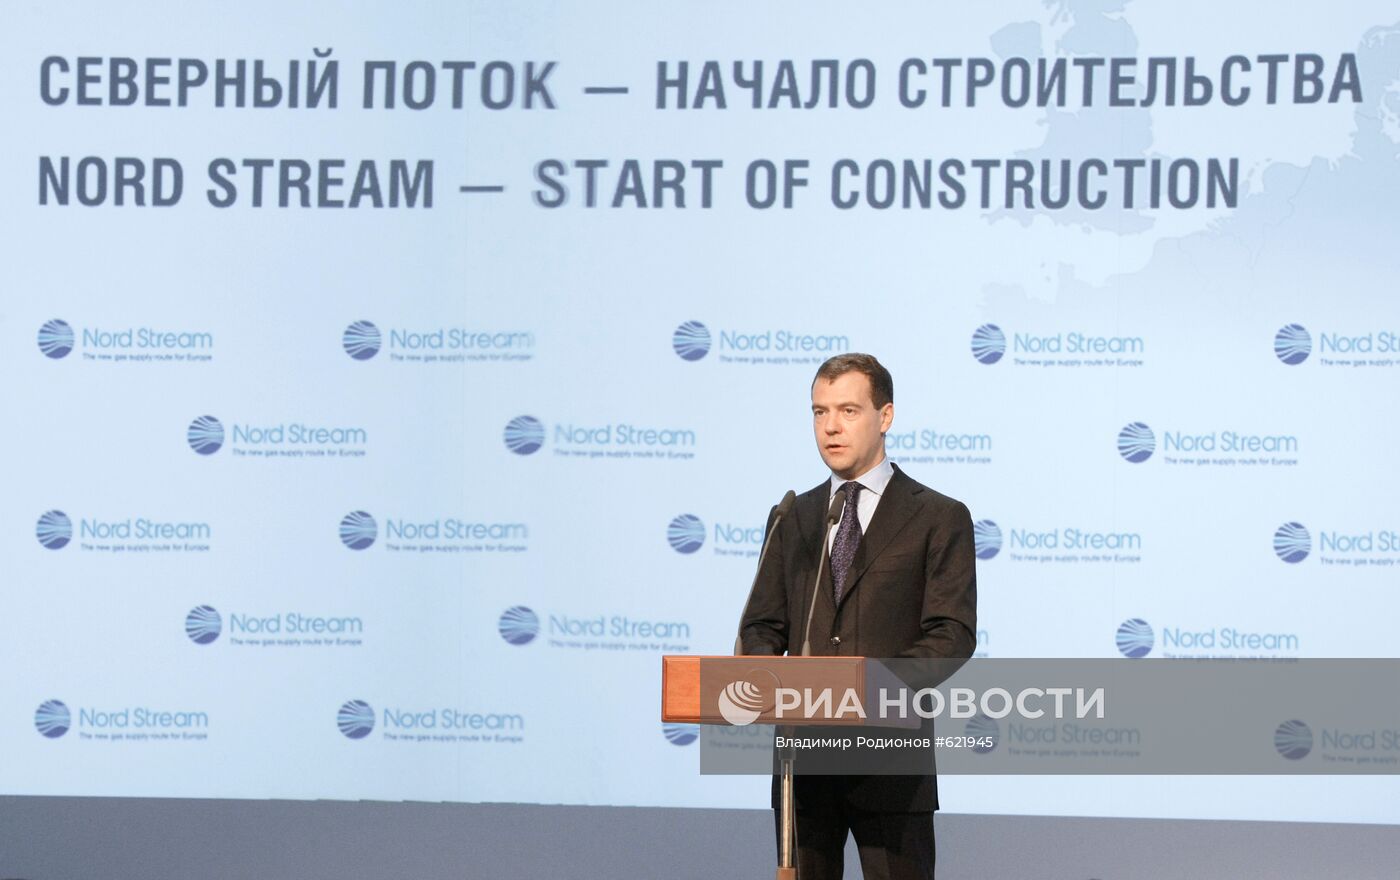 Церемония начала строительства газопровода "Северный поток"